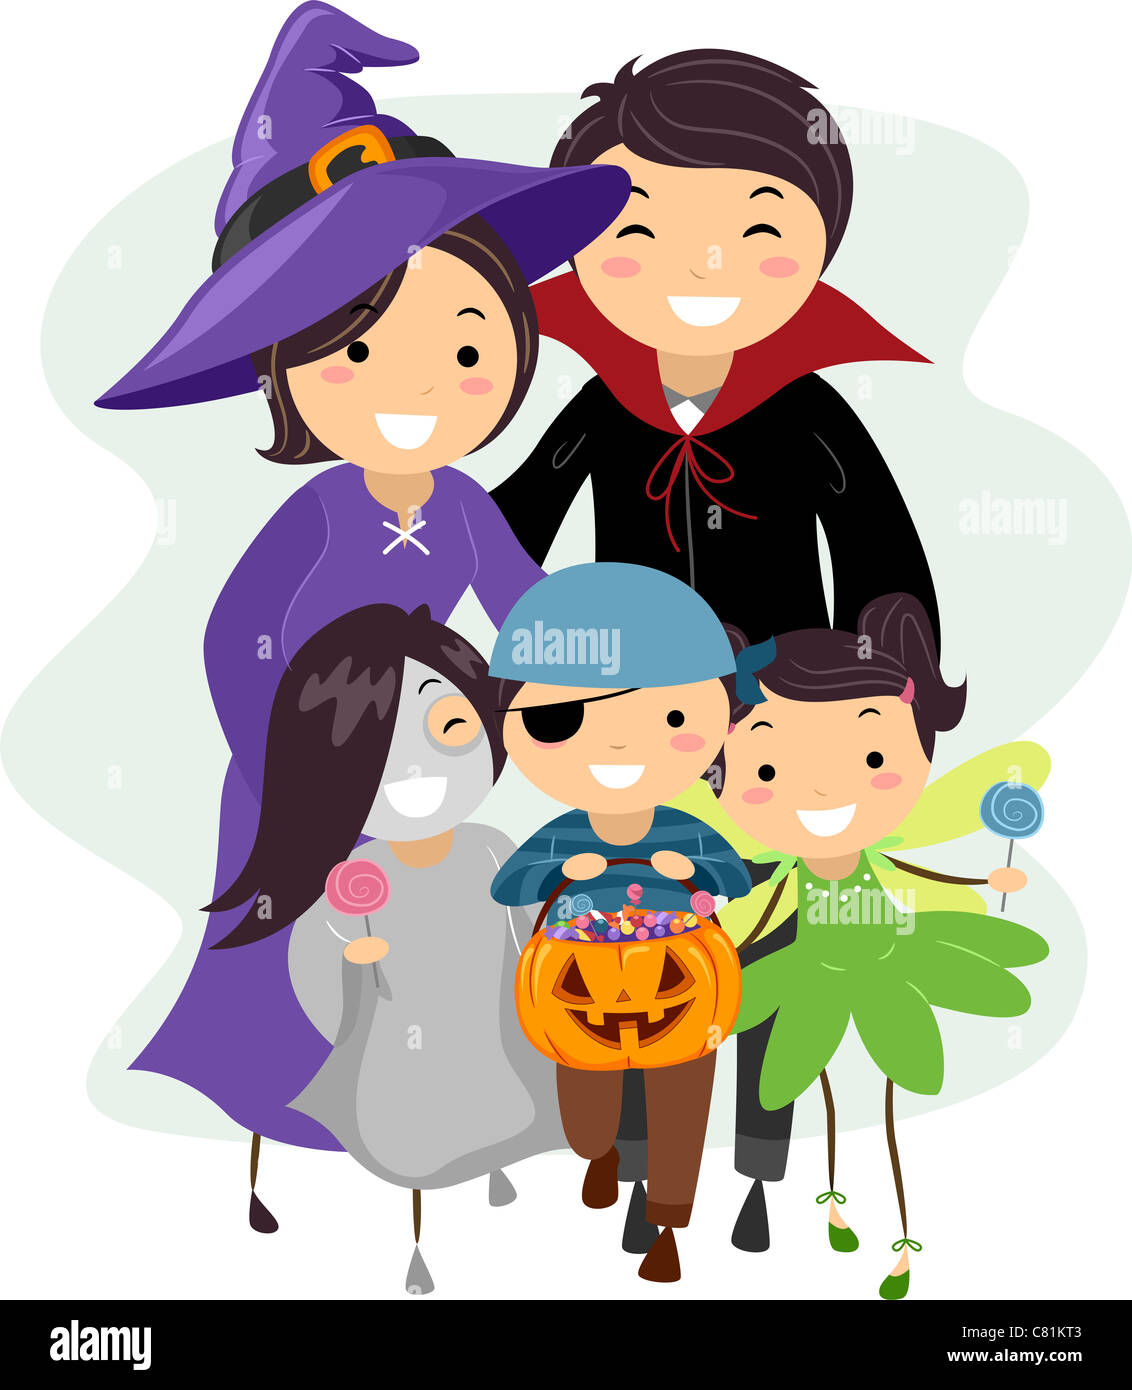 Abbildung einer Familie in Halloween-Kostümen gekleidet Stockfoto